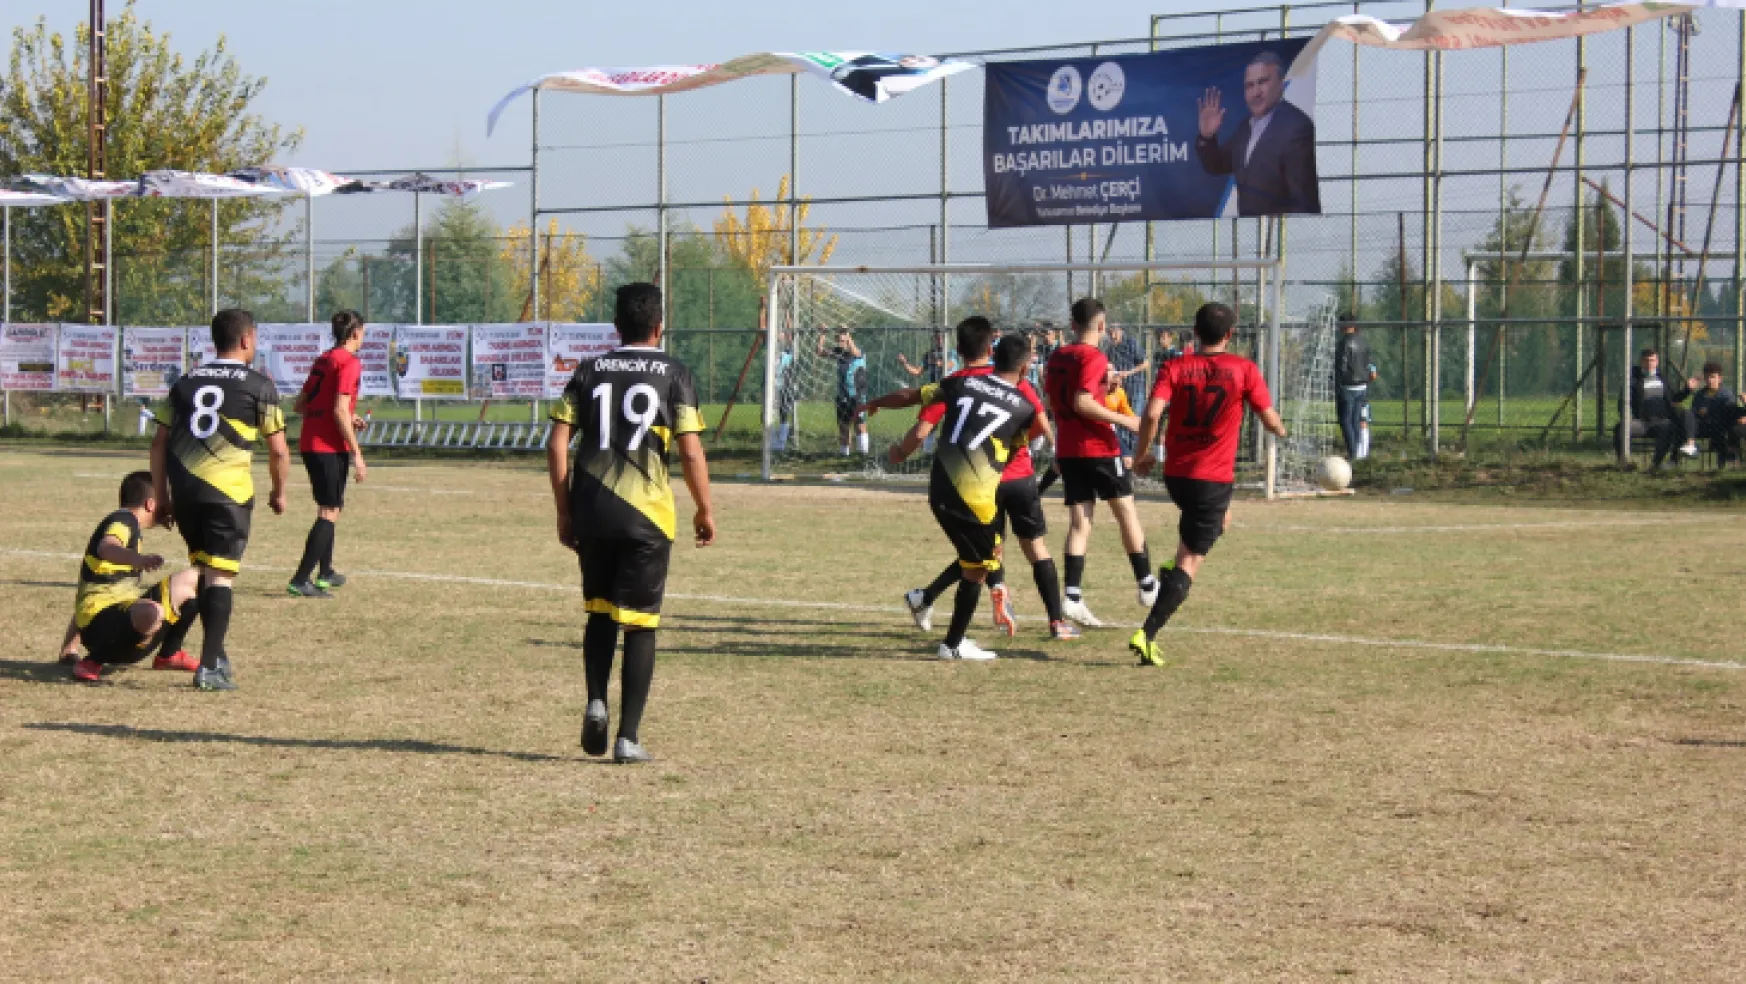 Yuntdağı Cup 5 Futbol Turnuvası'nın heyecanı 25 takımın katılımıyla başladı